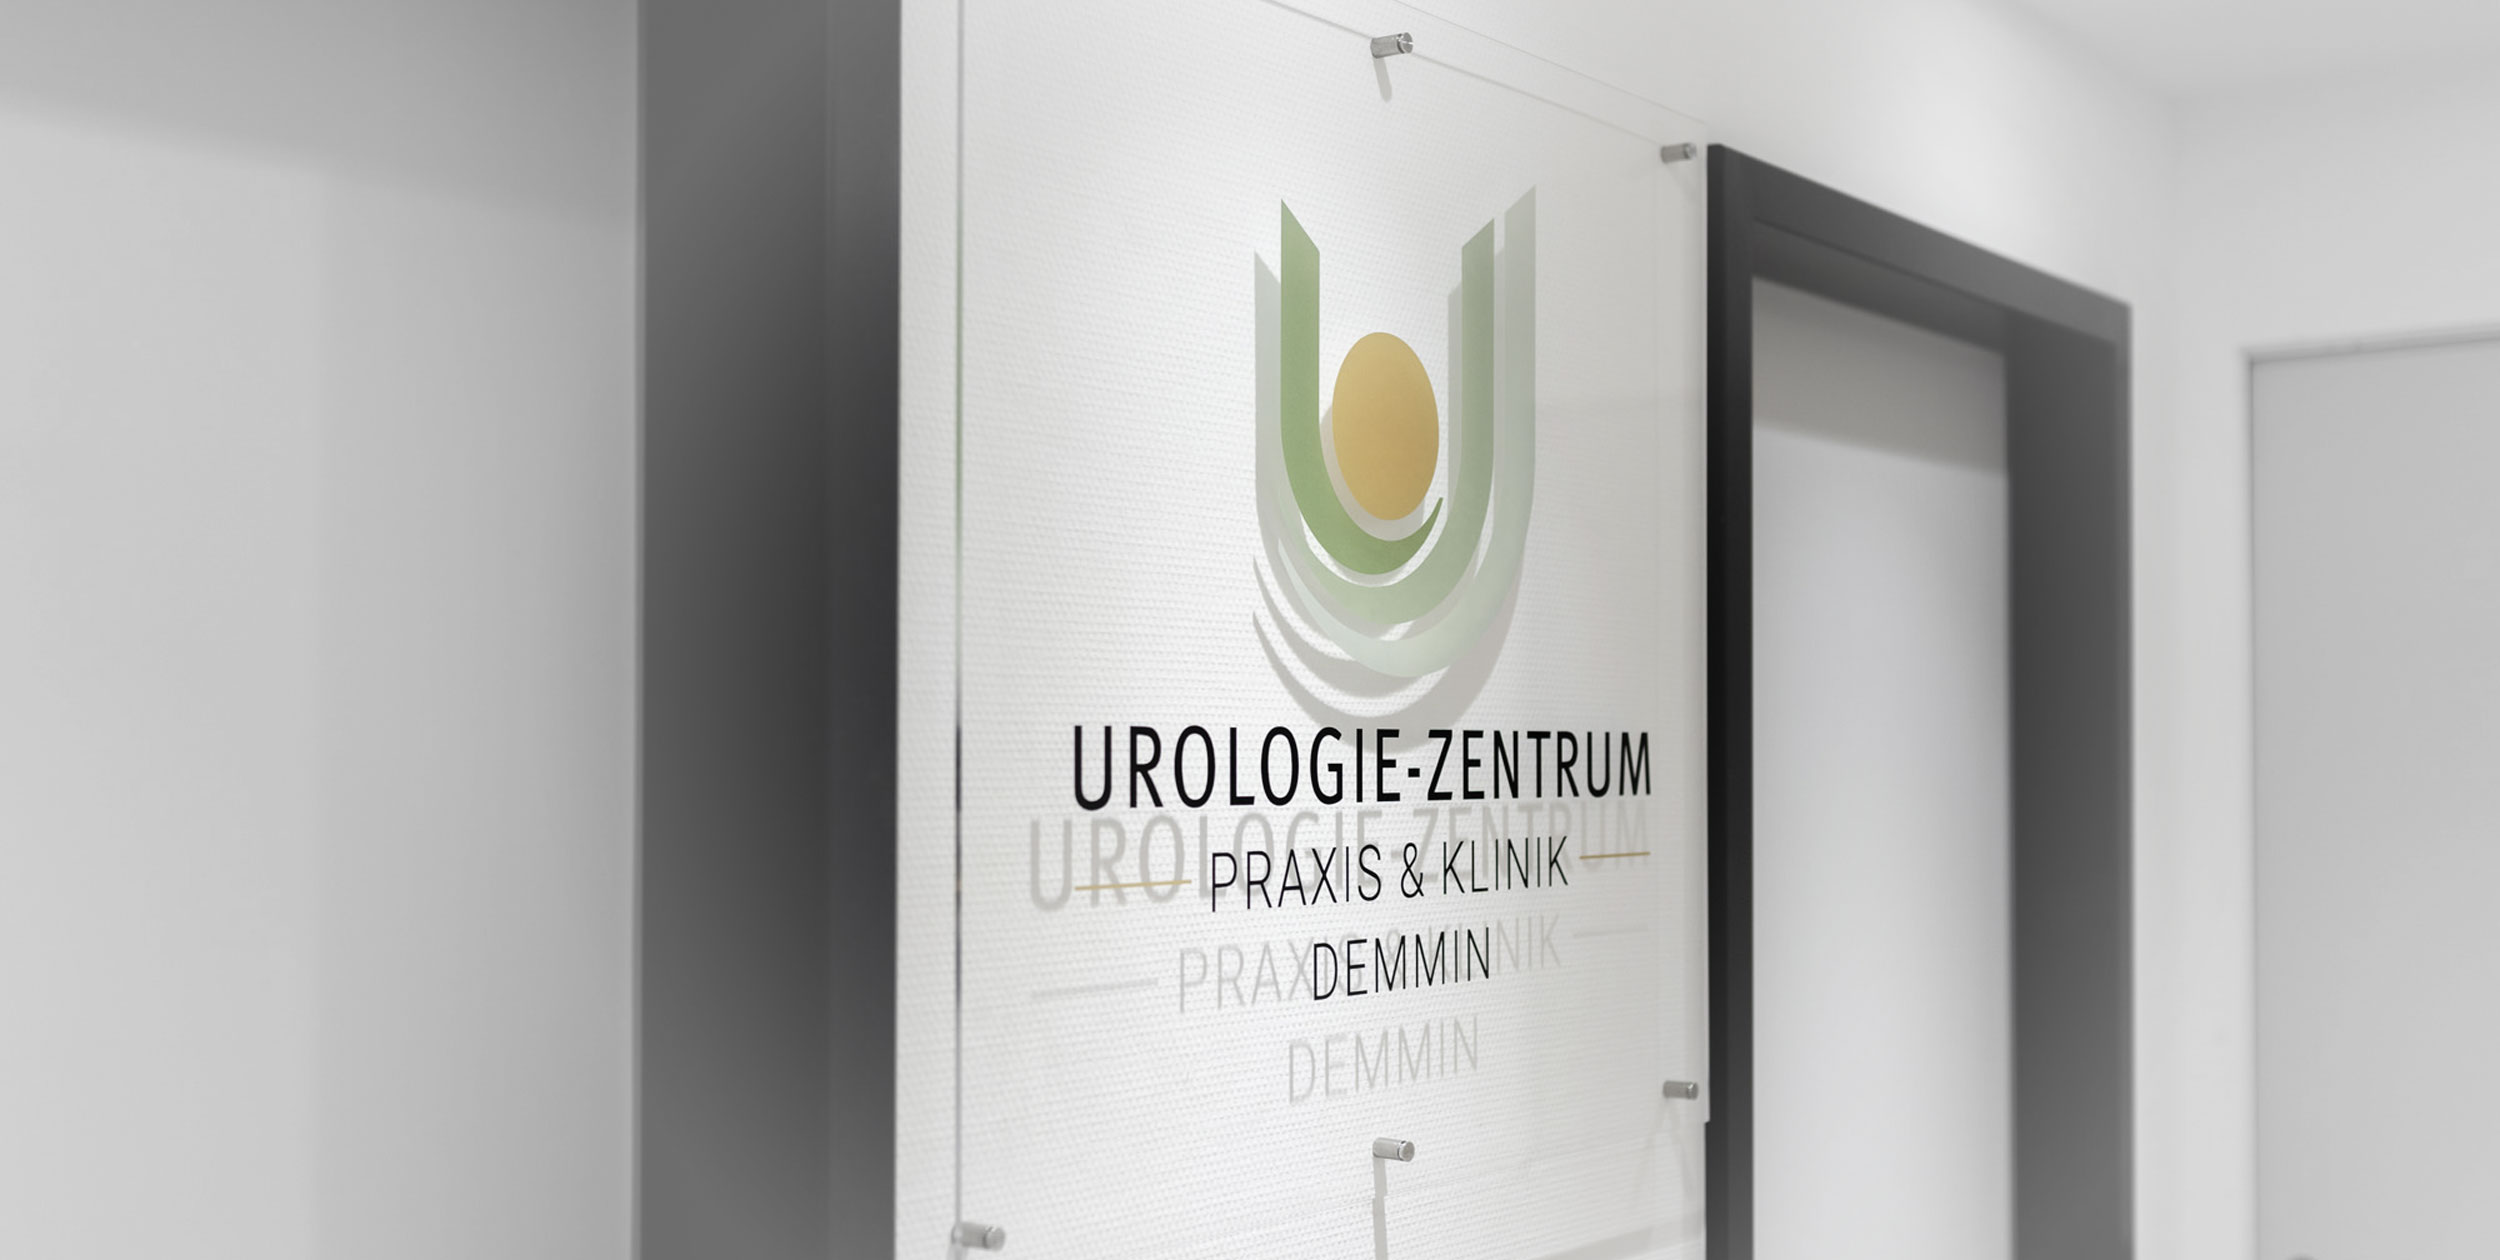 Das Logo der Arztpraxis ist in attraktiver Form auf eine Plexoglasplatte gedruckt, die im Eingangsbereich der Praxis angebracht ist.